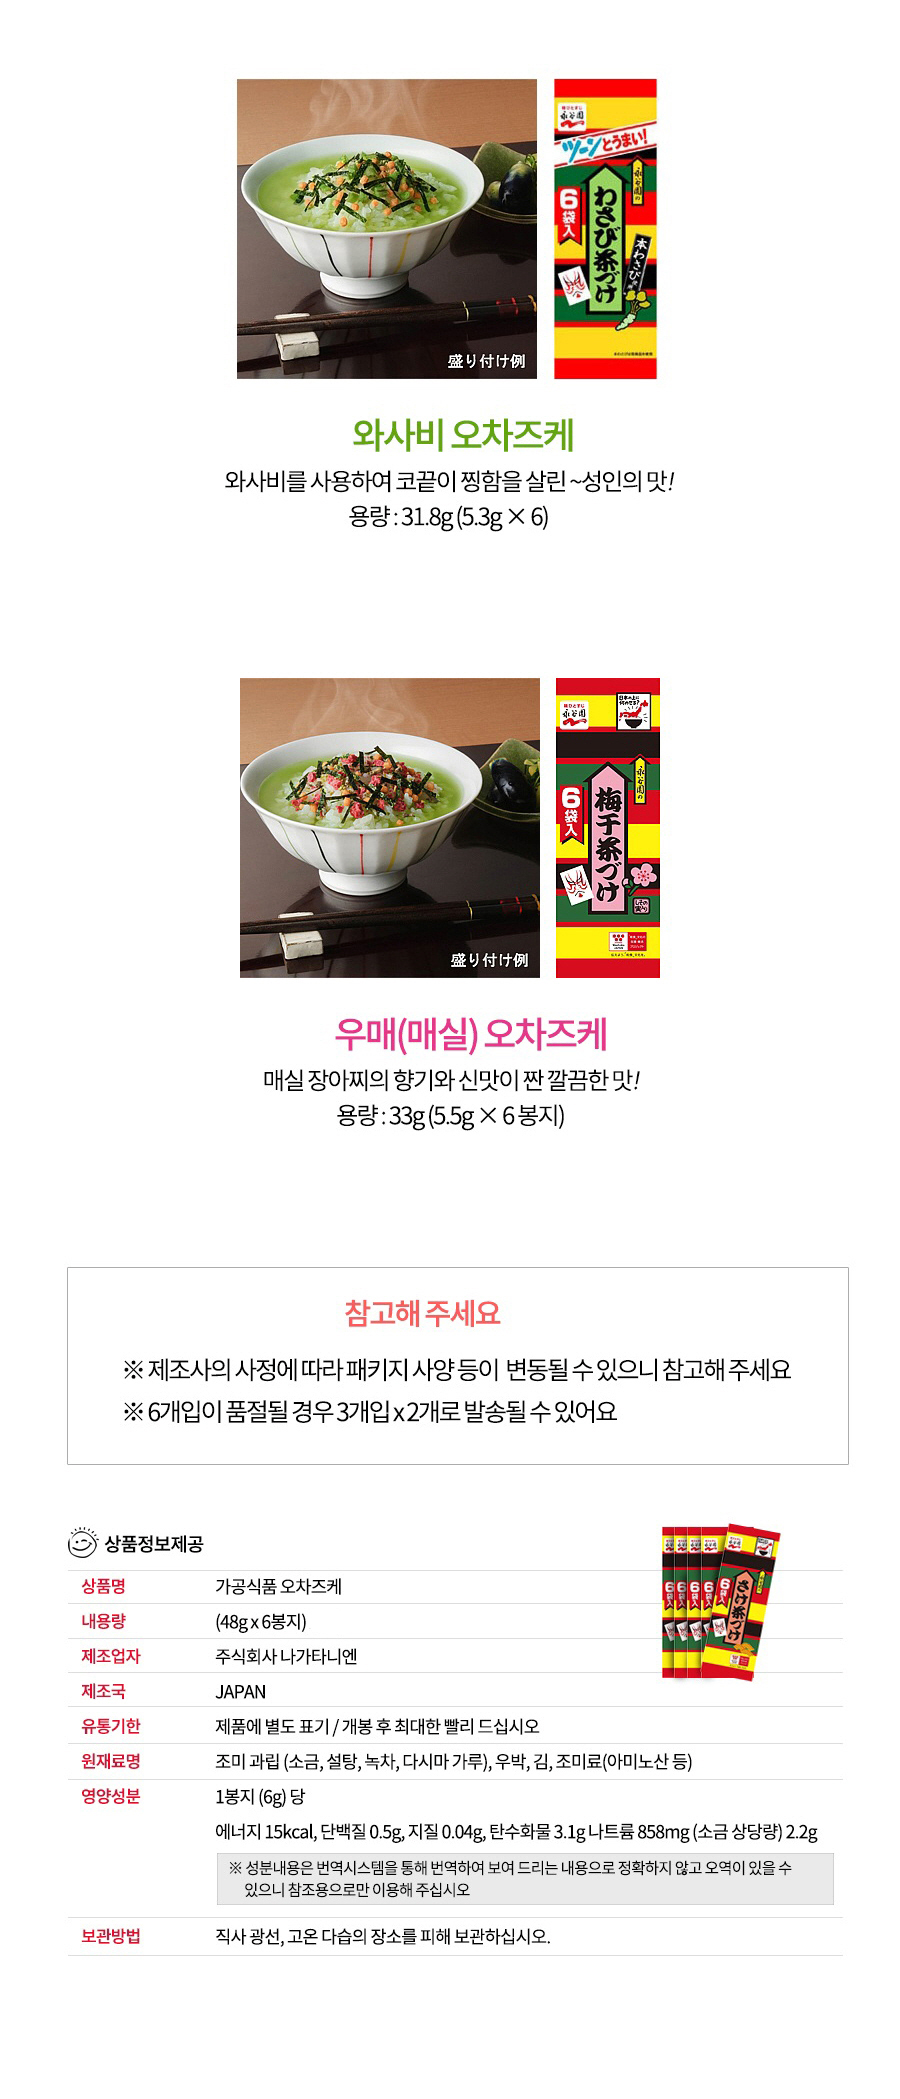 오차즈케 김 8봉지 후리카케 볶음밥 주먹밥2